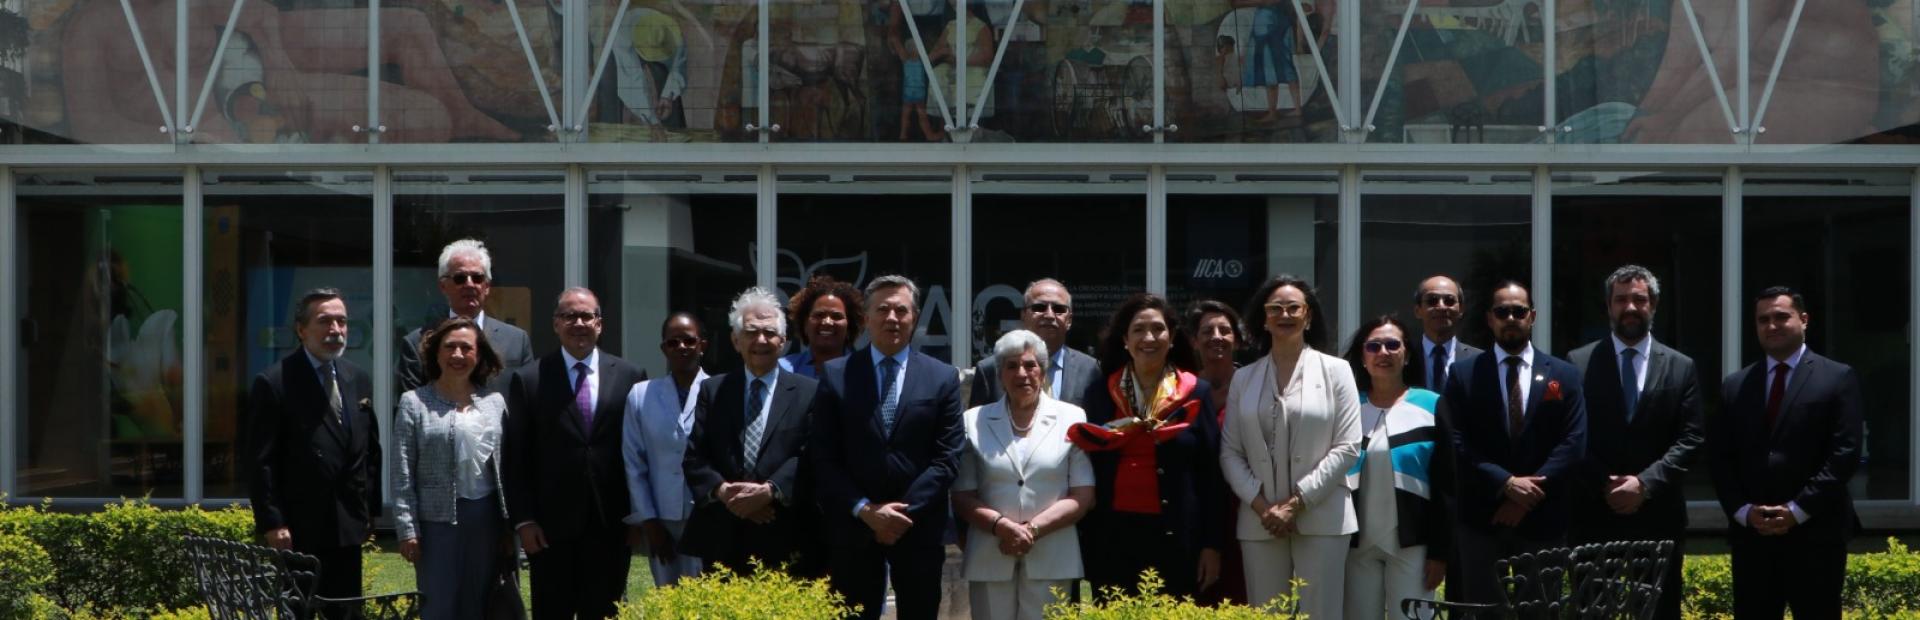 1.	Os embaixadores visitaram a sede central do IICA em São José e também apoiaram o processo de transformação institucional realizado pelo Diretor Geral do organismo, Manuel Otero.